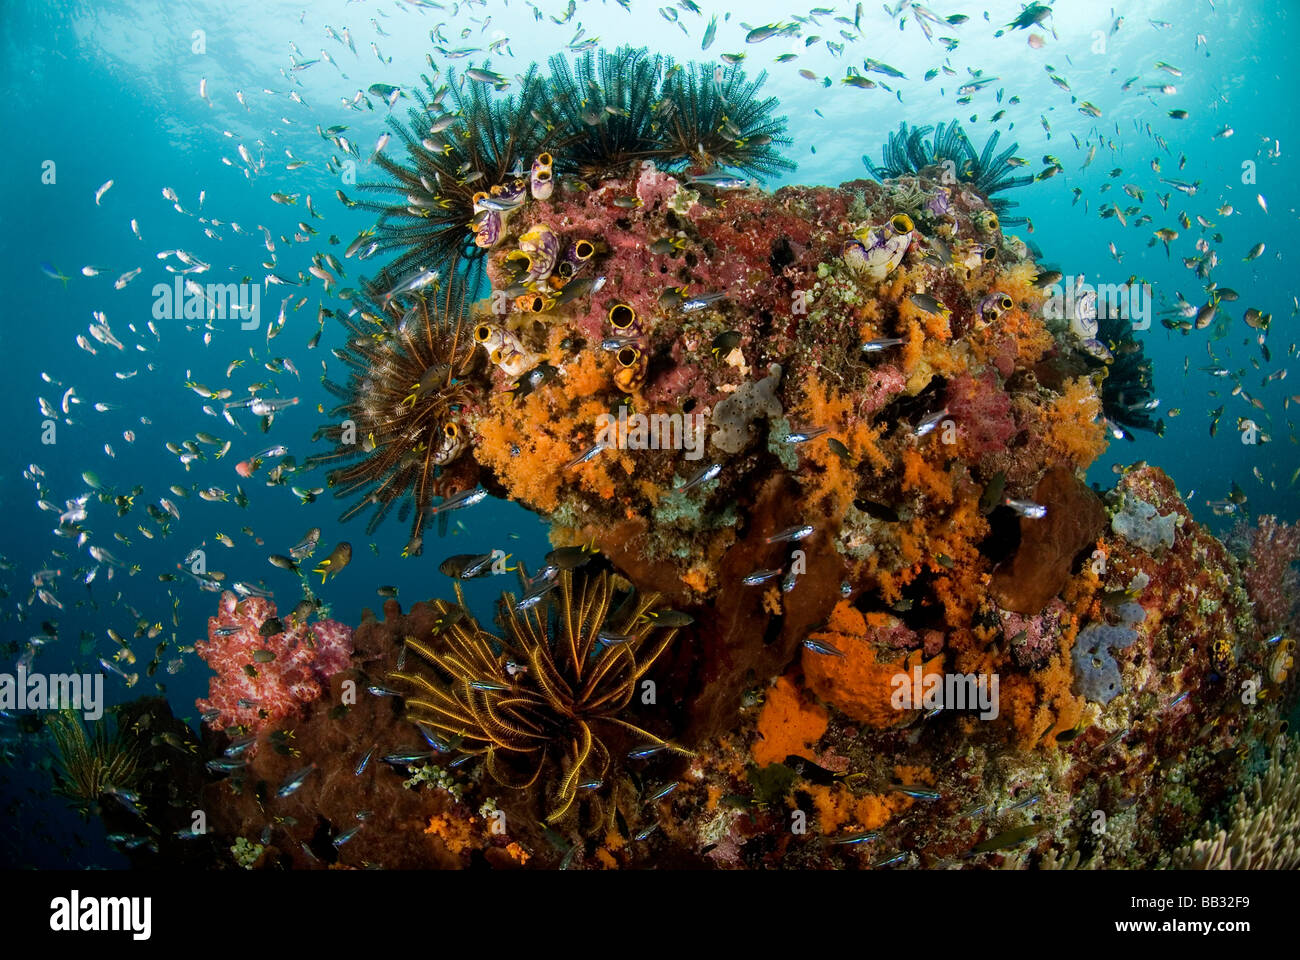 Océano Índico, Indonesia, Papua, Raja Ampat. Panorama de arrecifes de corales, invertebrados, peces y escolarización. Foto de stock